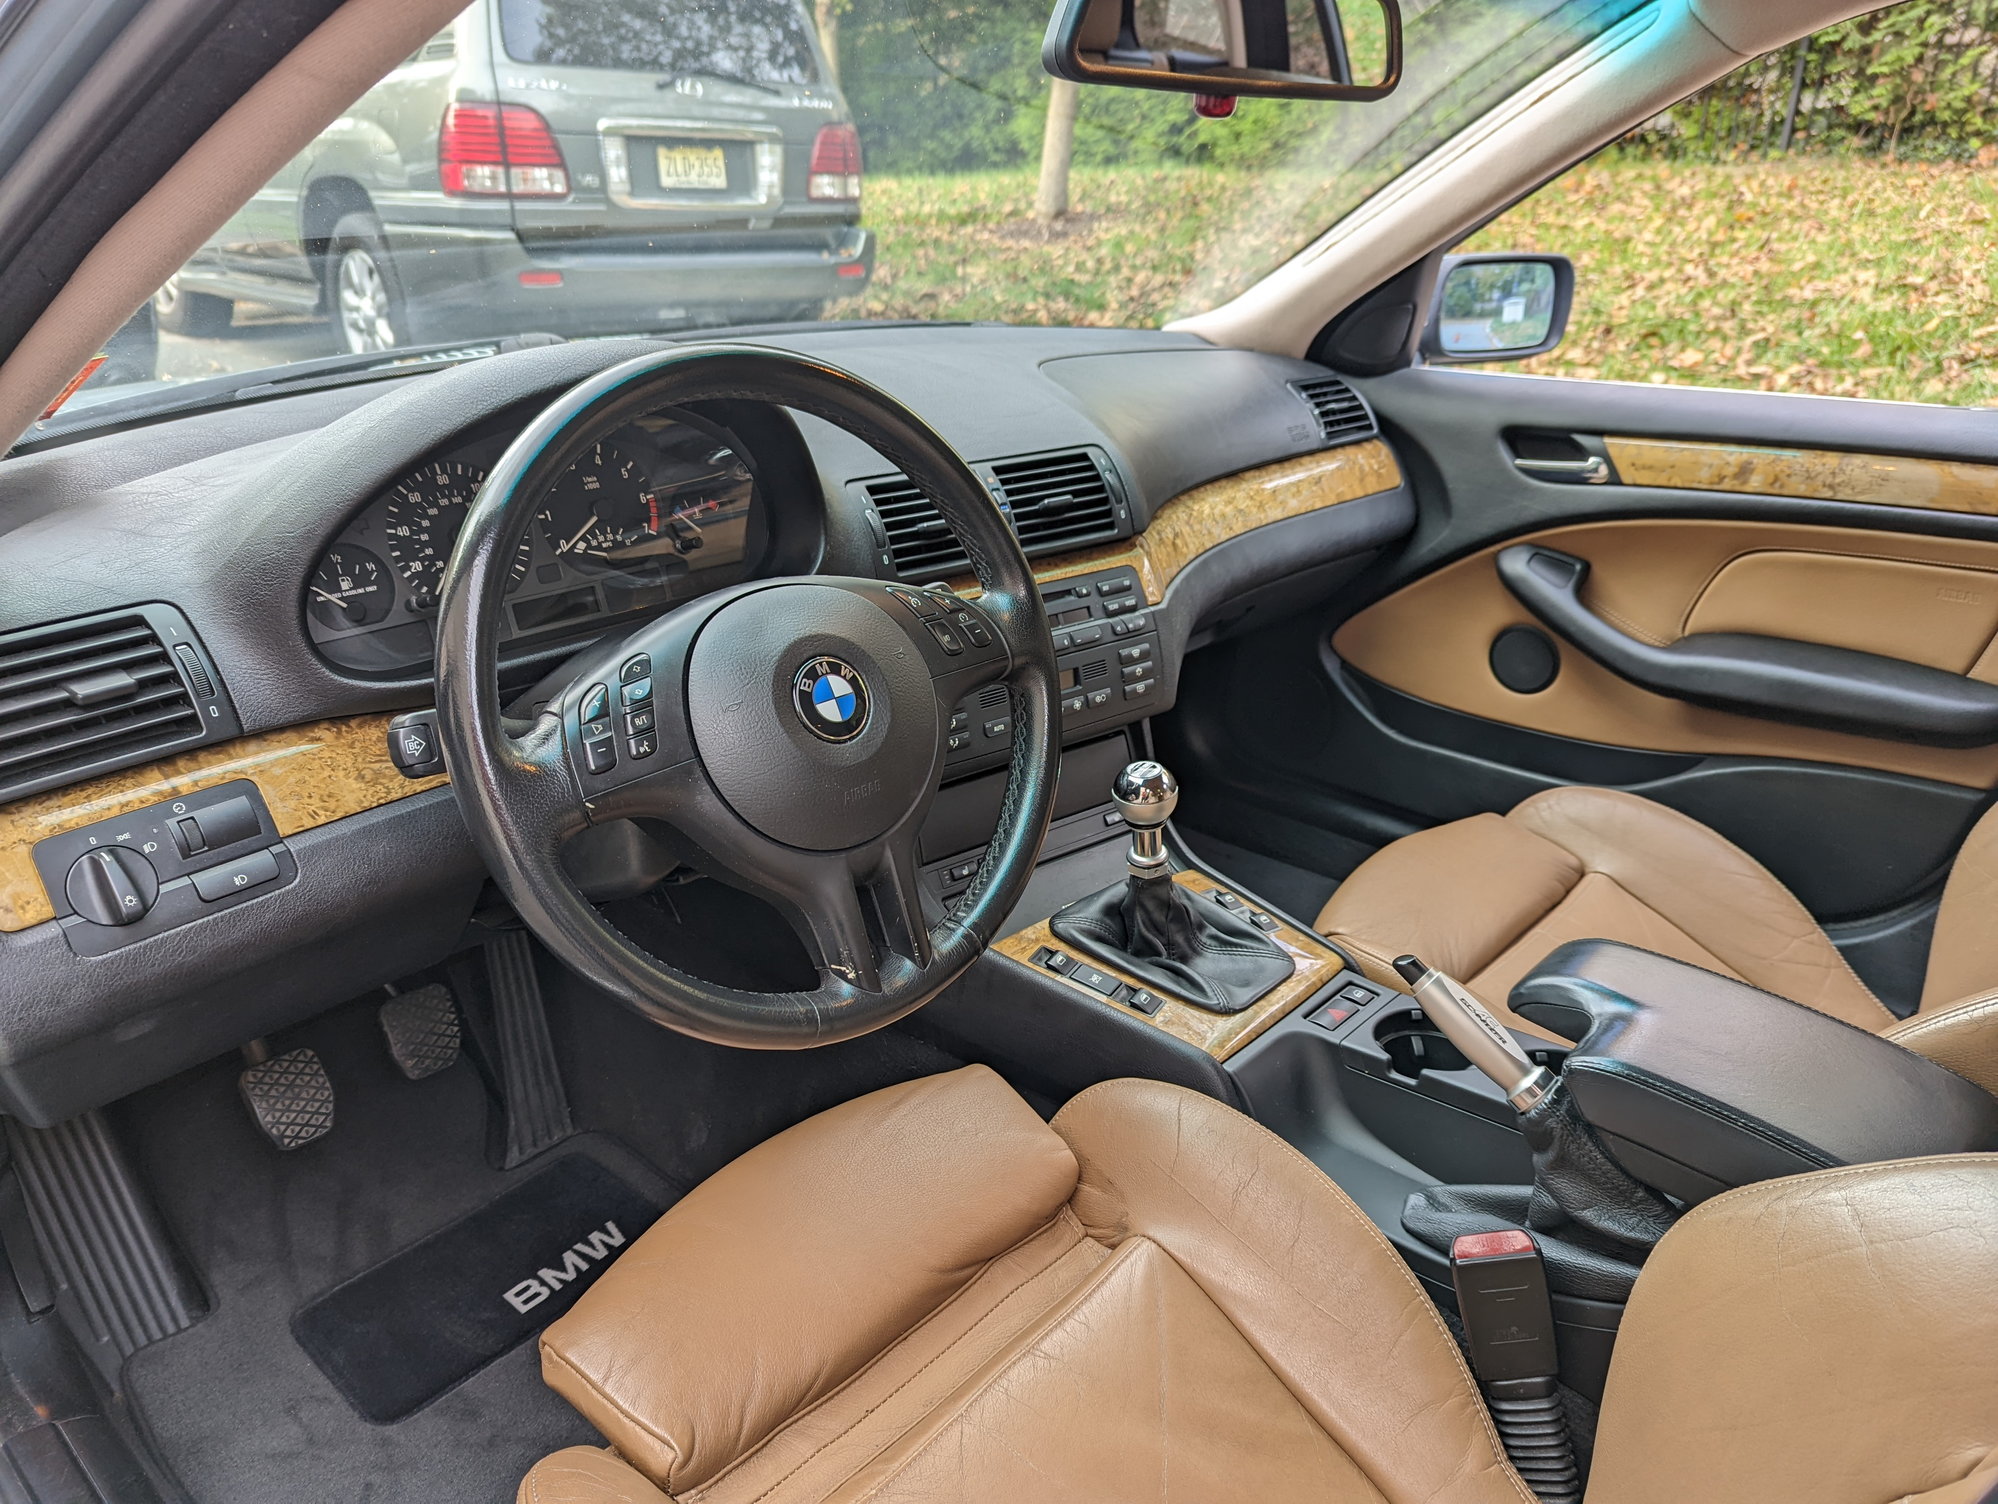 BMW E46 Rare 🔥 champagne color Sedan Touring Wagon interior trim M3 325 328